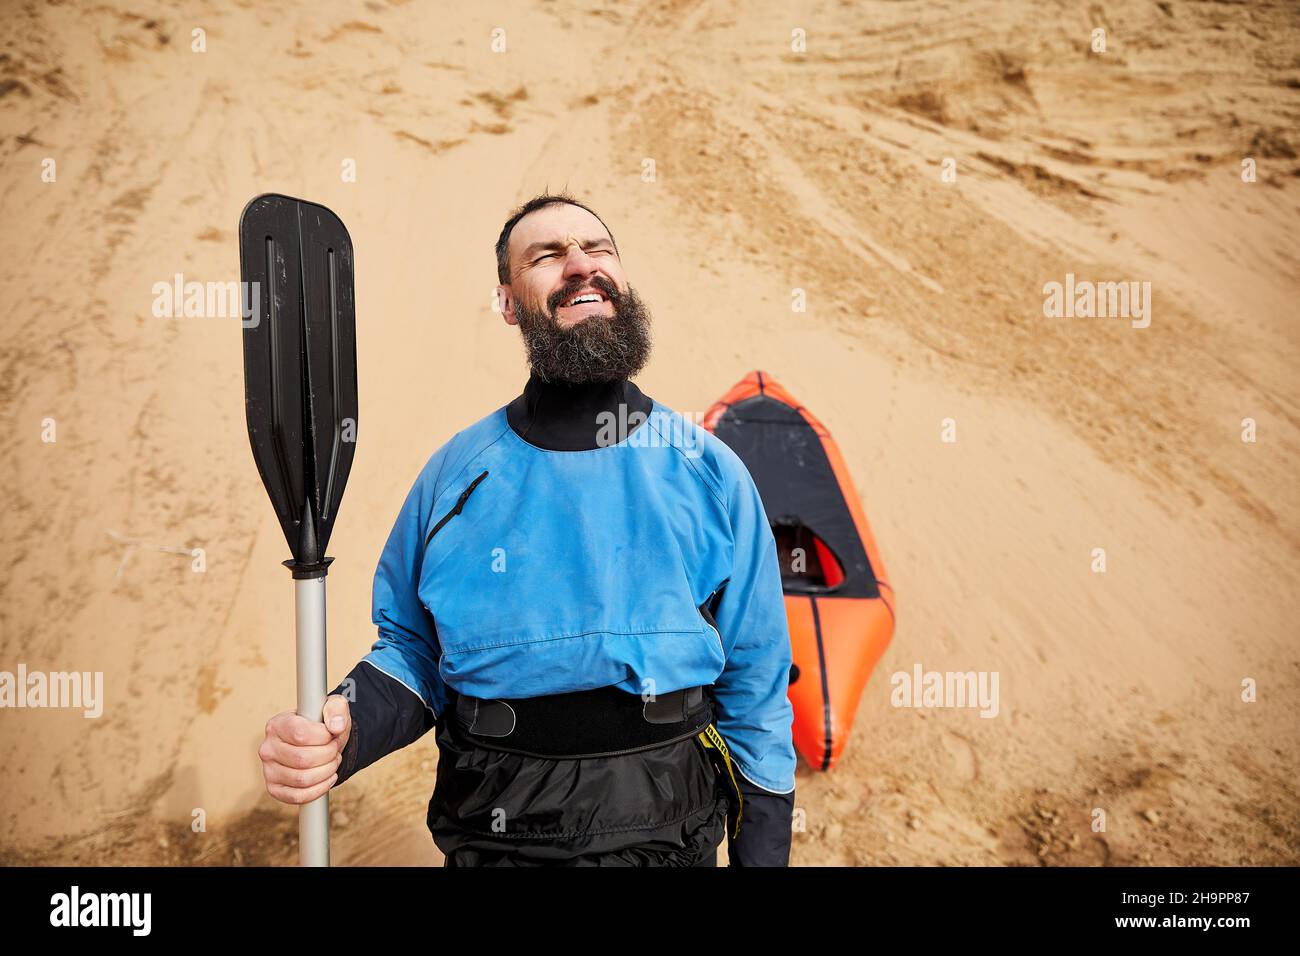 Retrato del anciano con barba negra y remar en chaqueta azul sonriendo cerca de bote deportivo naranja en fondo de dunas de arena Foto de stock